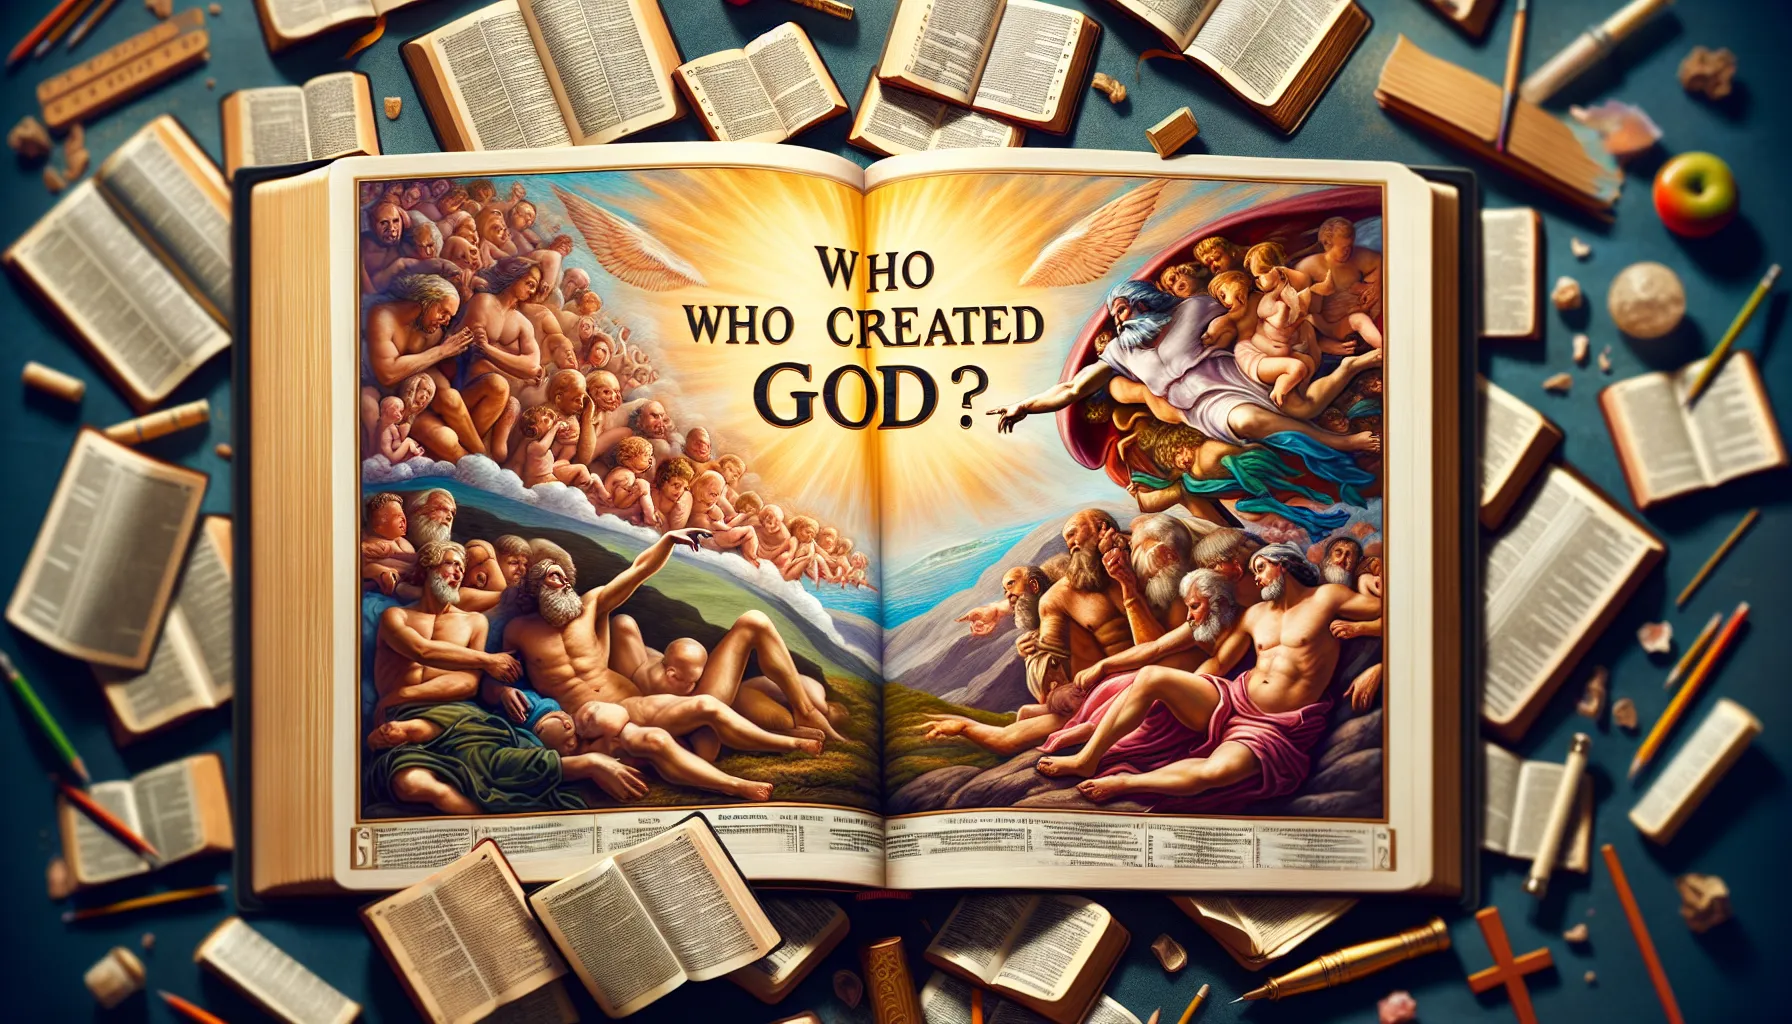 Imagen de un fragmento de la Biblia Católica con la pregunta: ¿Quién creó a Dios? según la perspectiva religiosa.